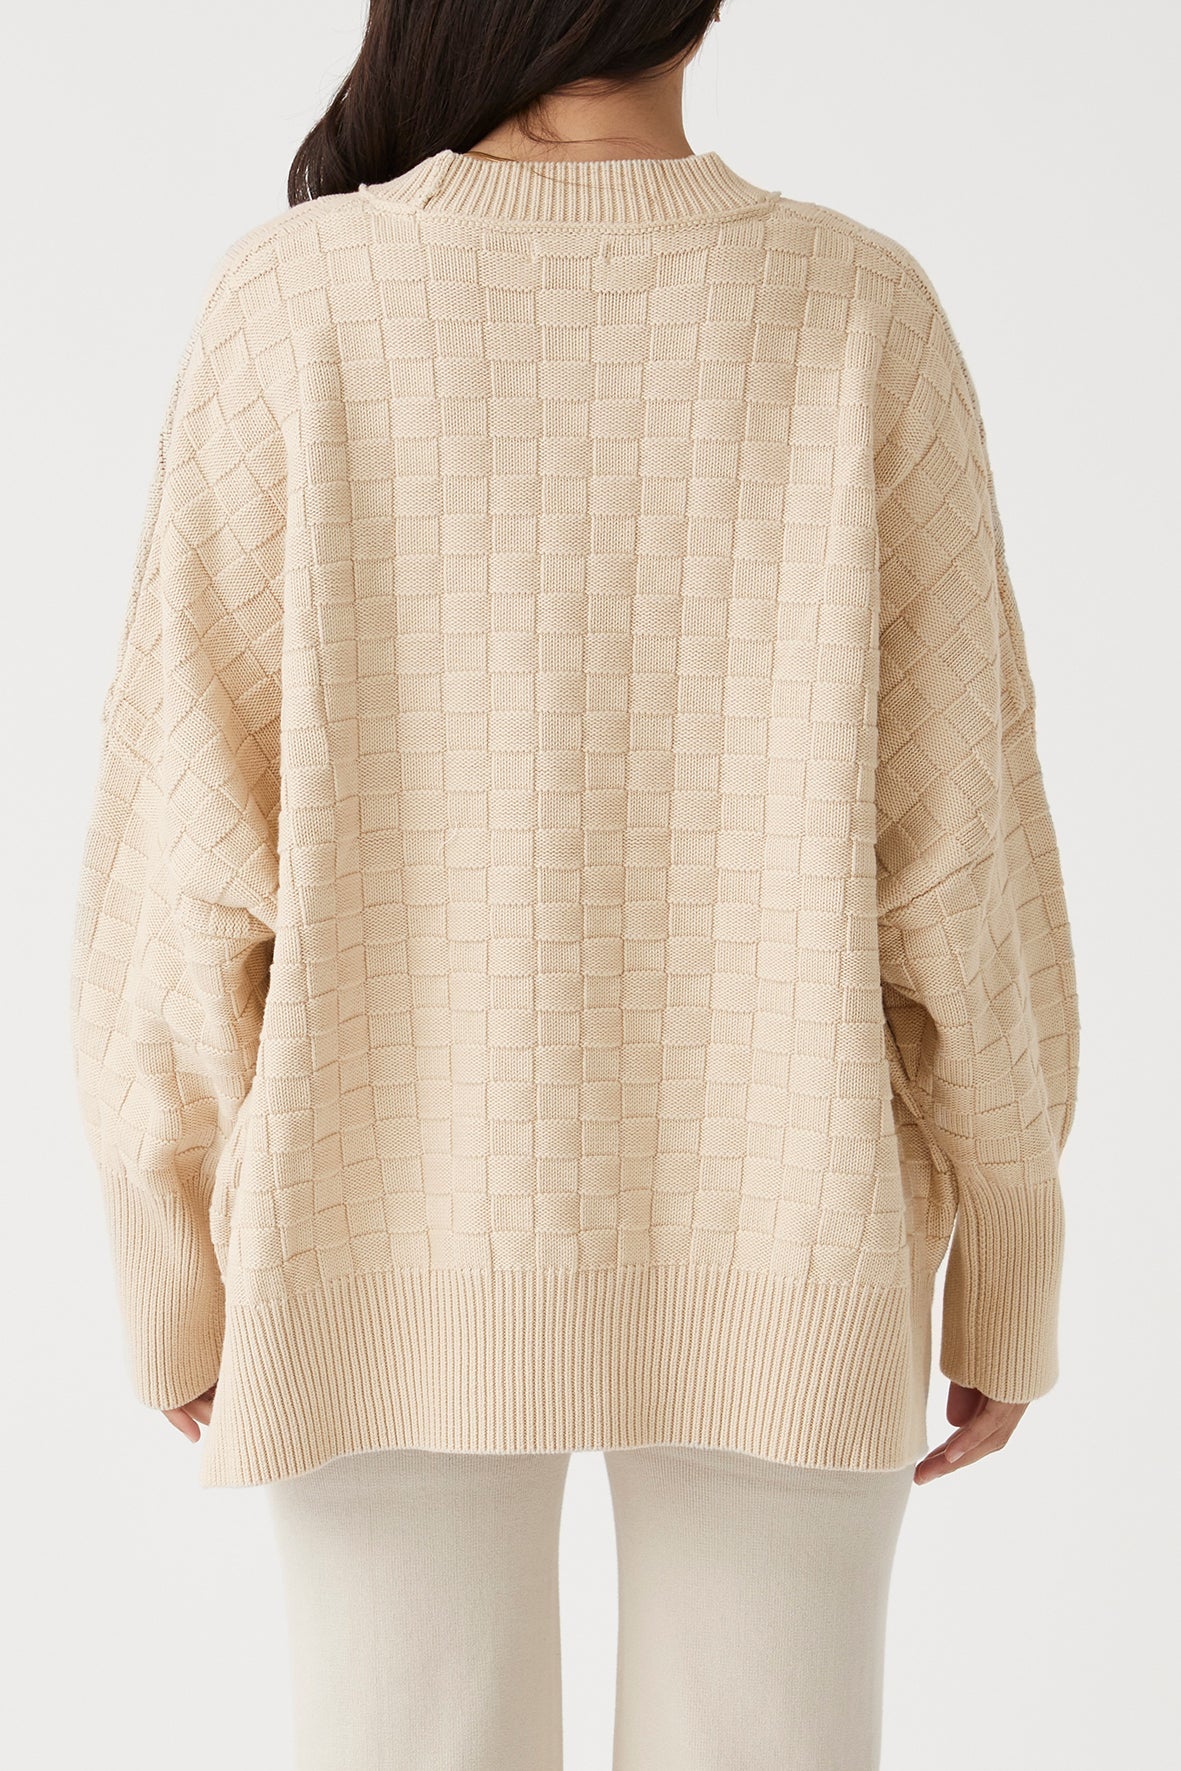 Sierra Organic Knit Sweater Oat